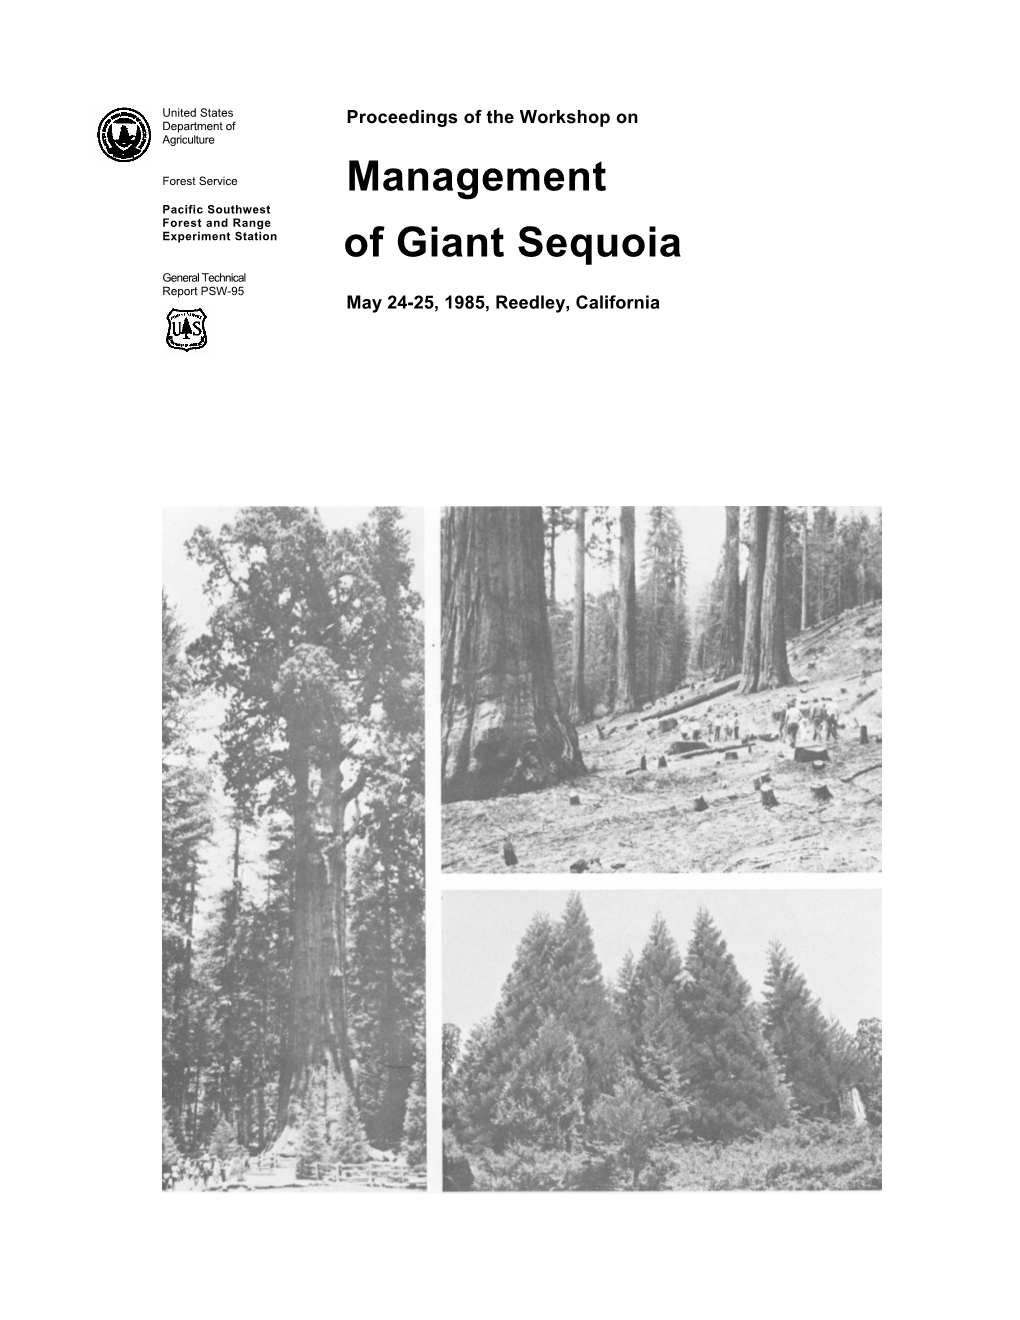 Of Giant Sequoia